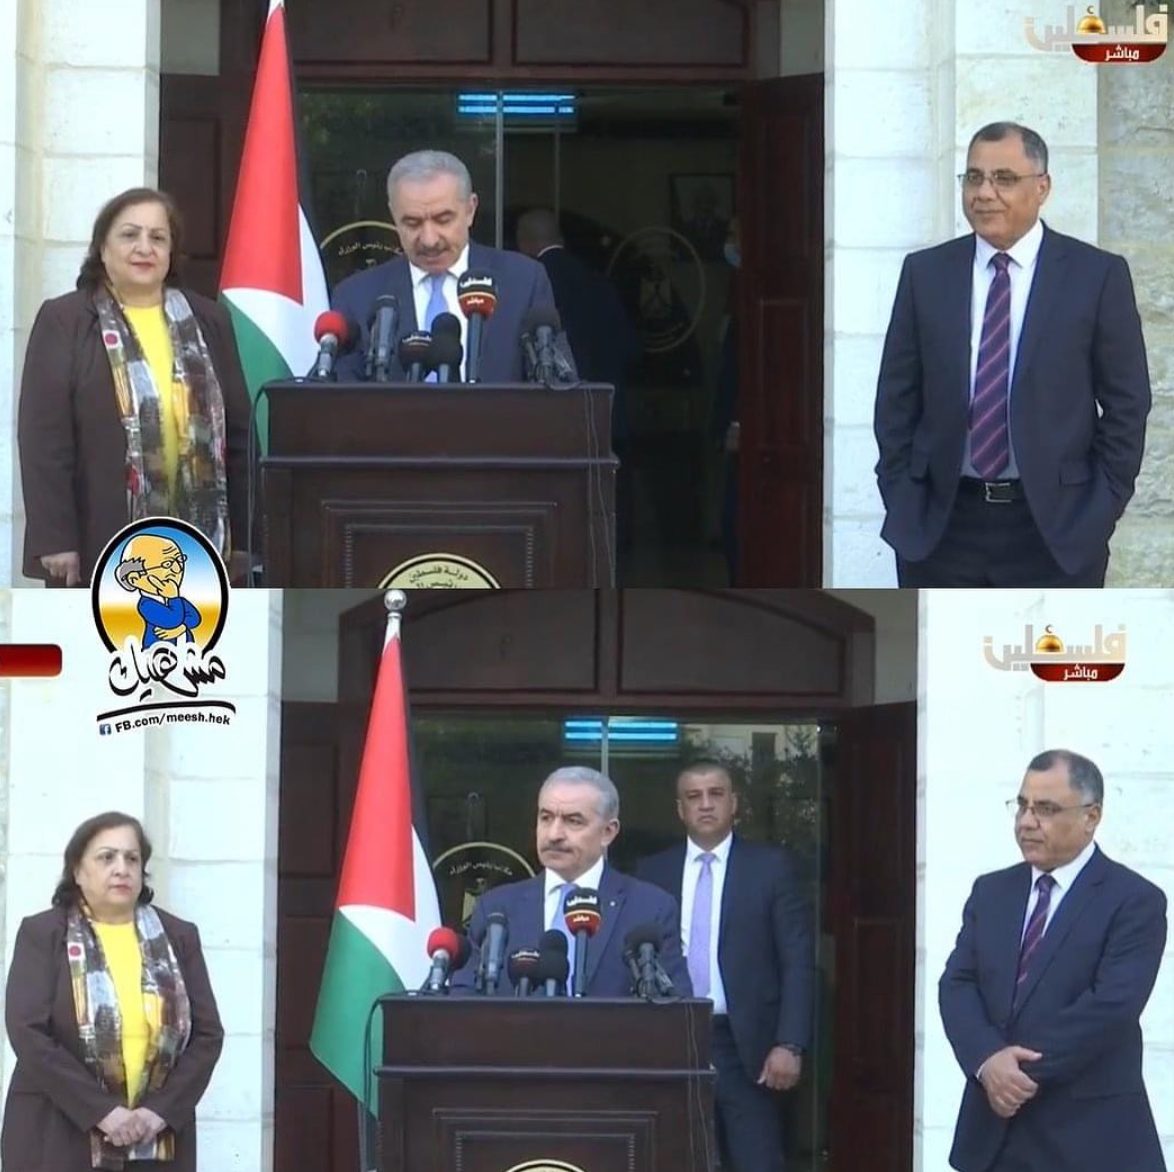 رئيس الوزراء الفسلطيني للمتحدث باسم حكومته: "شيل ايديك من جيابك"